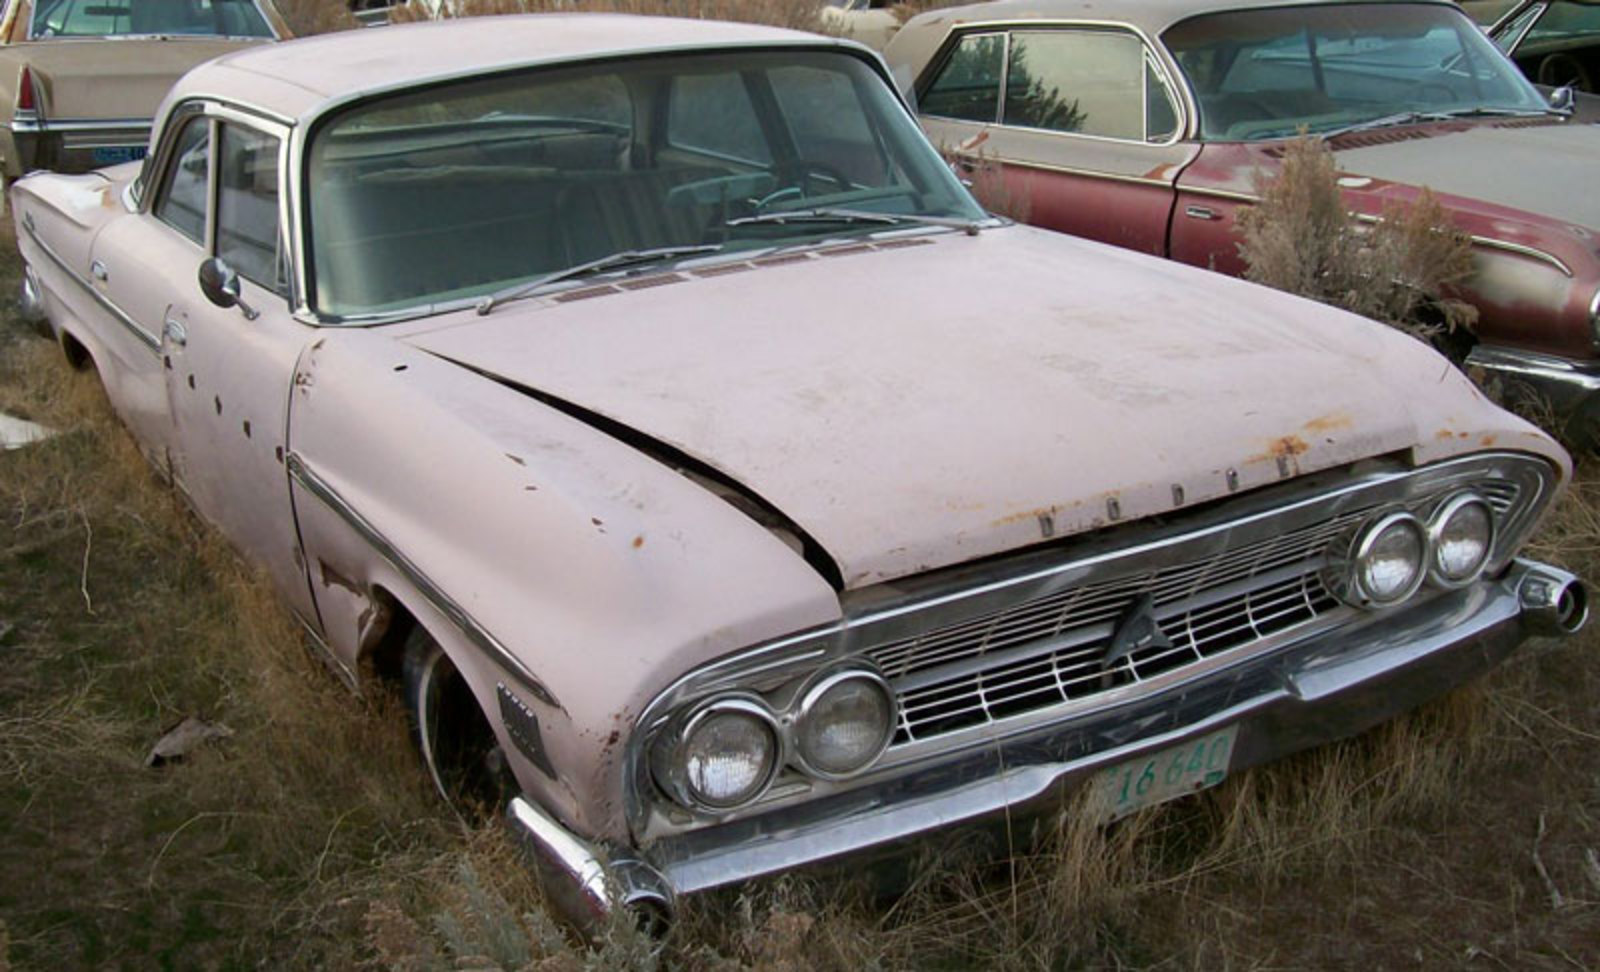 1962 Dodge Custom 880 4 door sedan for sale $3,500. 1962 Custom 880